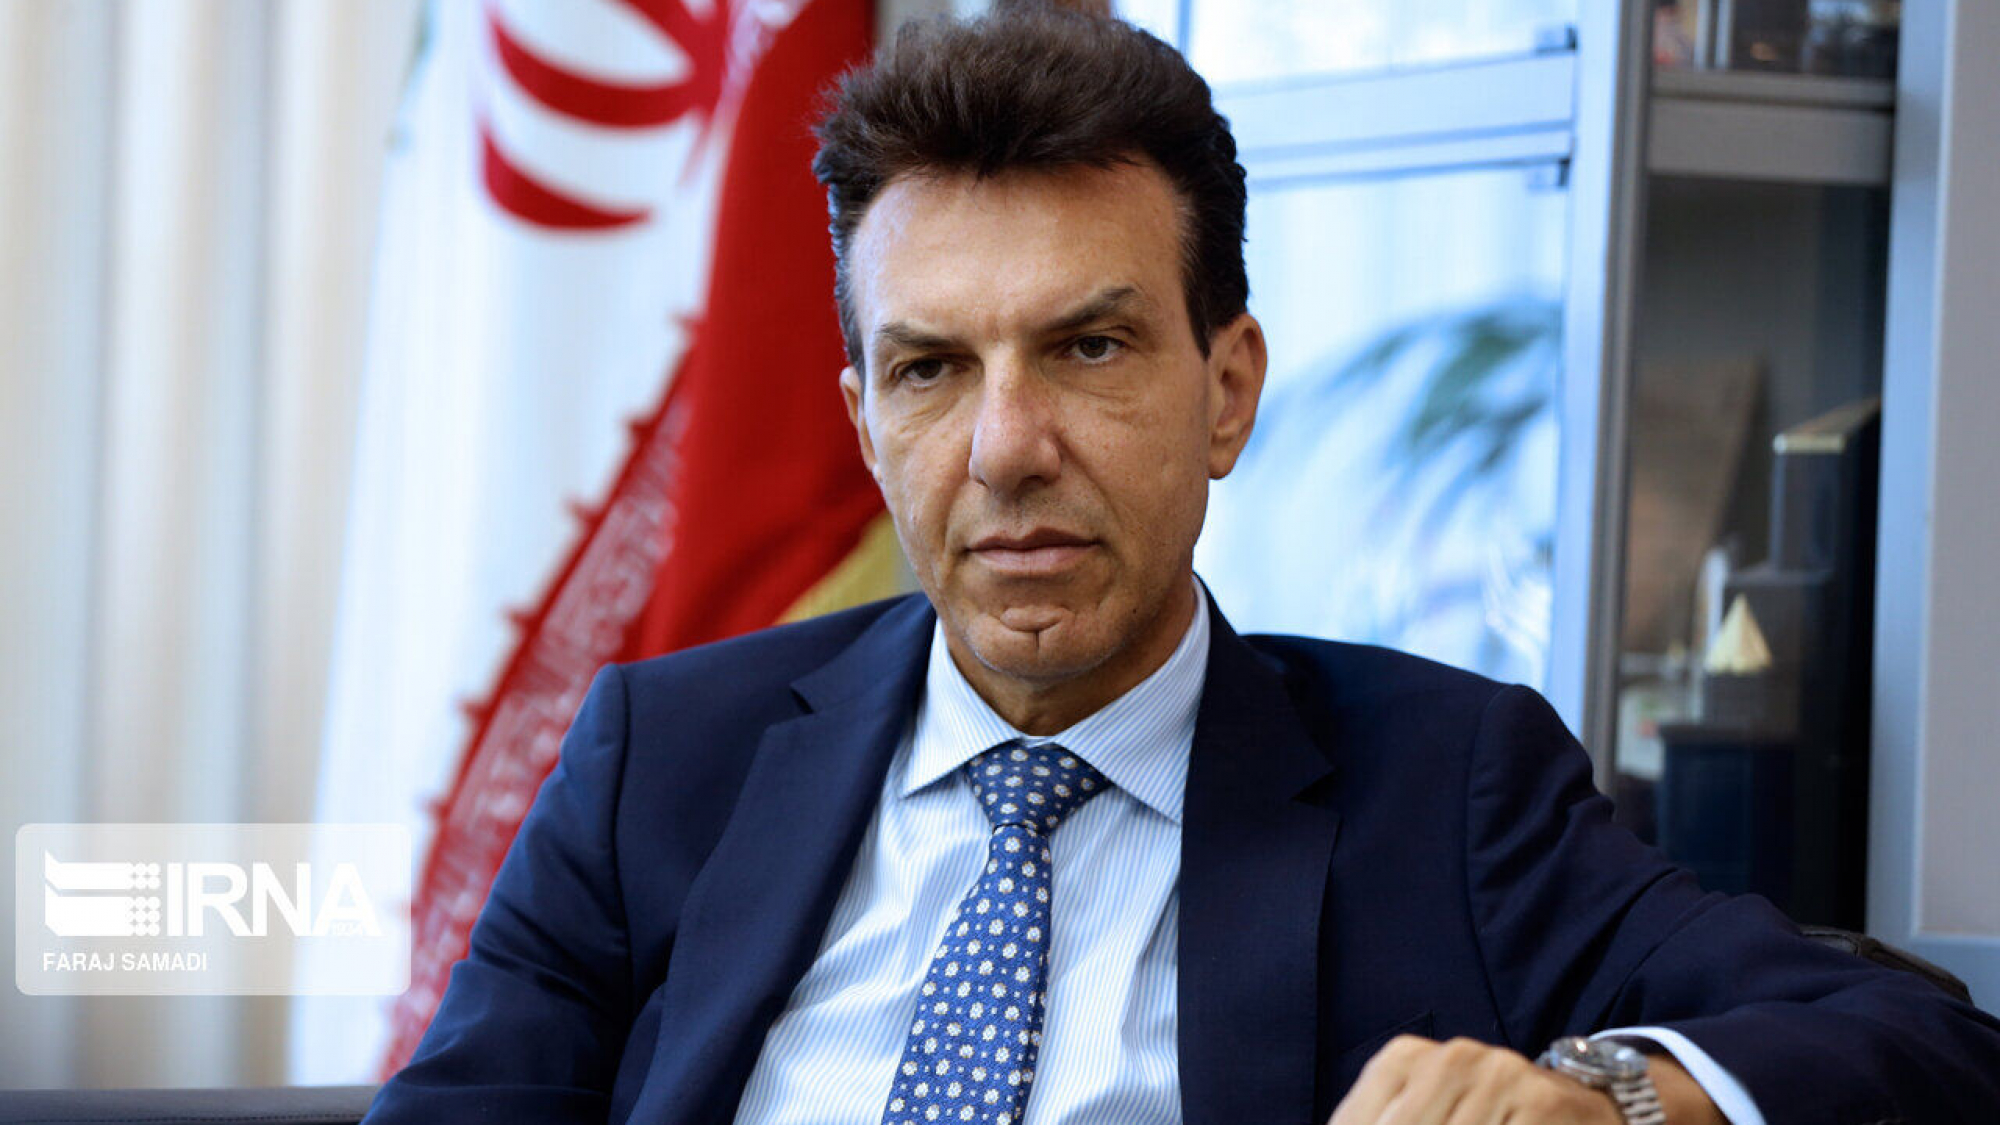 Il messaggio di auguri da Sua Eccellenza, Dr. Giuseppe Perrone, l’Ambasciatore d’Italia a Teheran